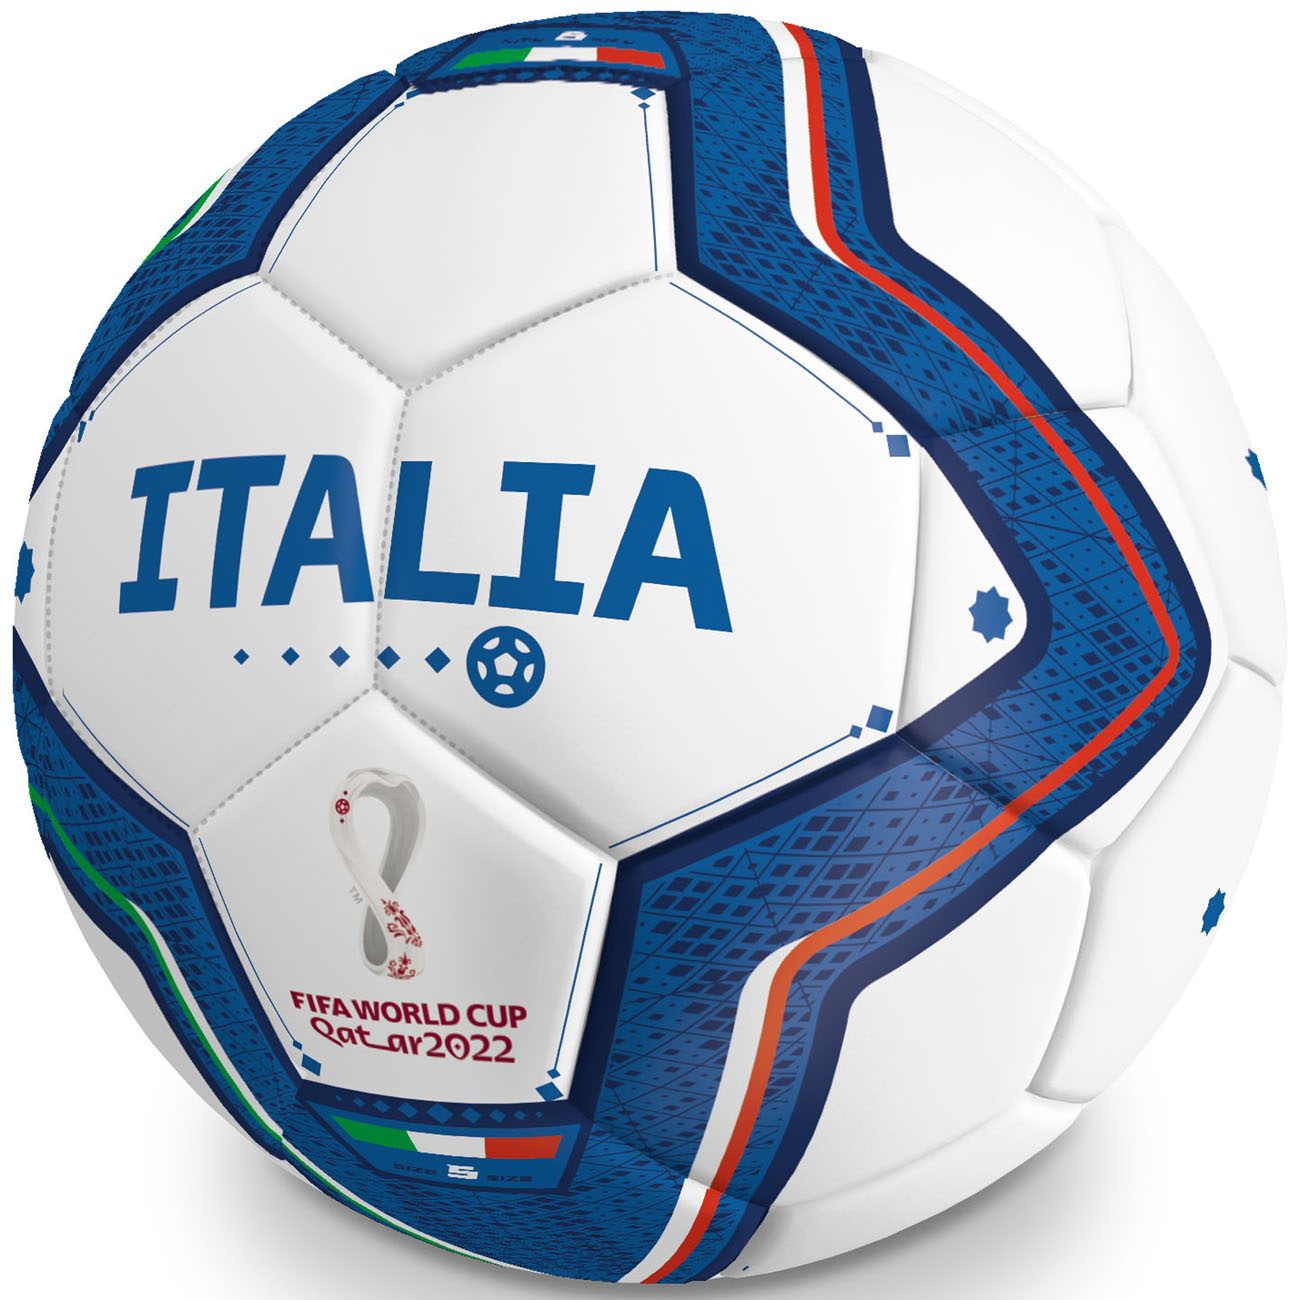 13441 Míč kopací FIFA 2022 ITALIA